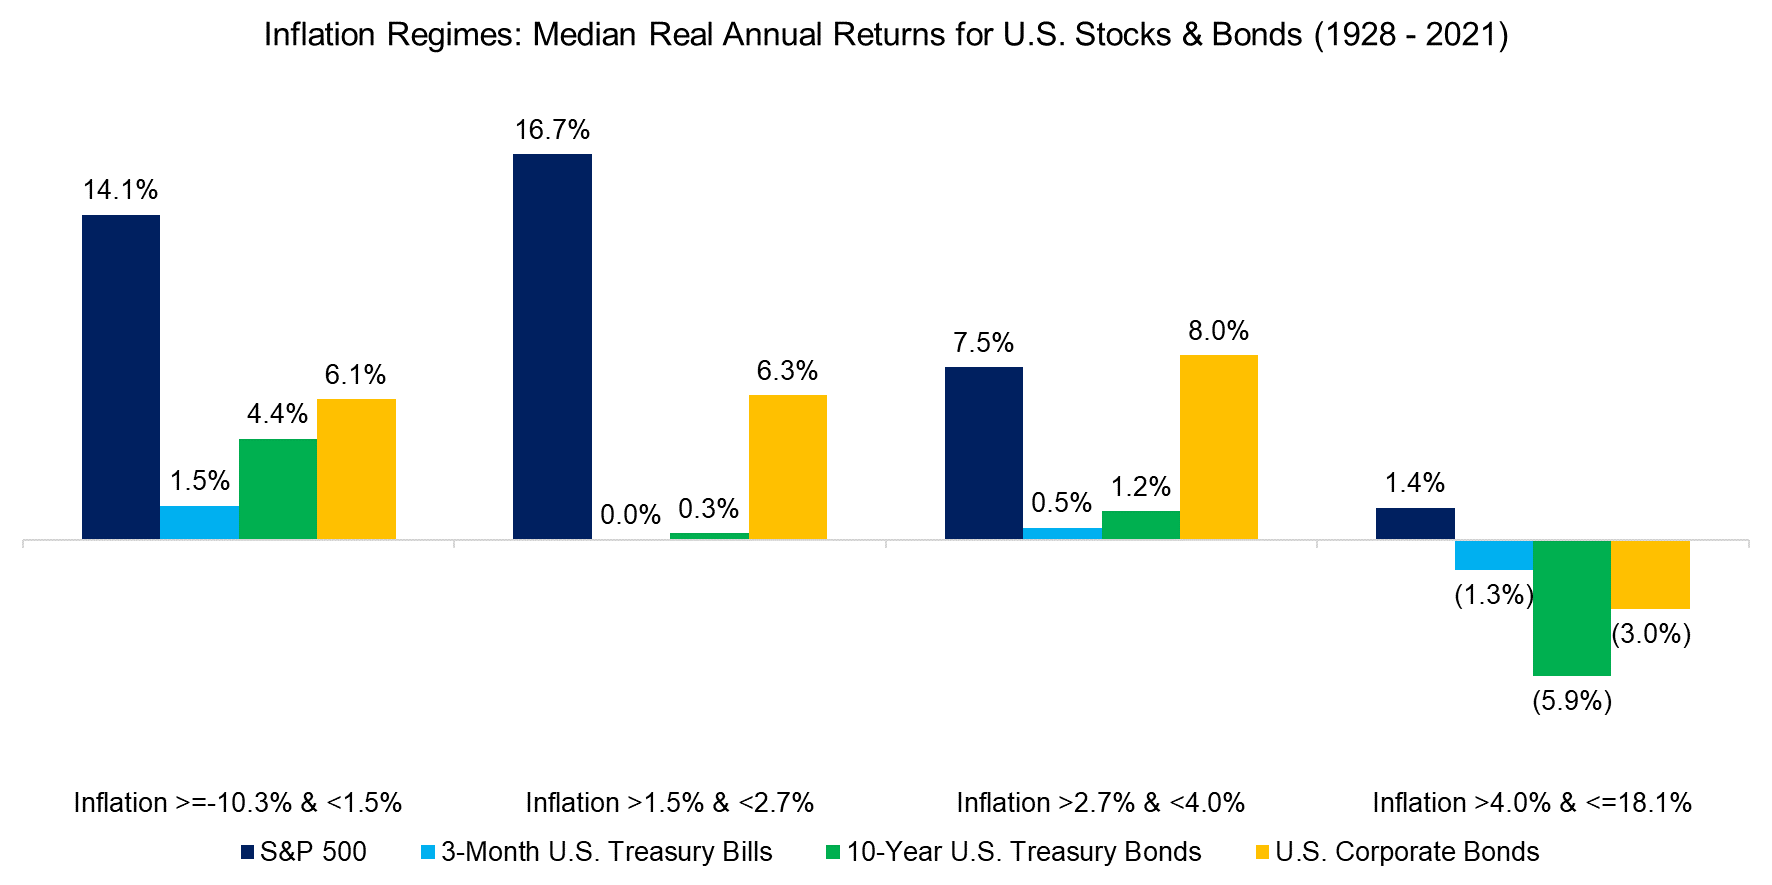 Inflation Regimes Median Real Annual Returns for U.S. Stocks & Bonds (1928 - 2021)